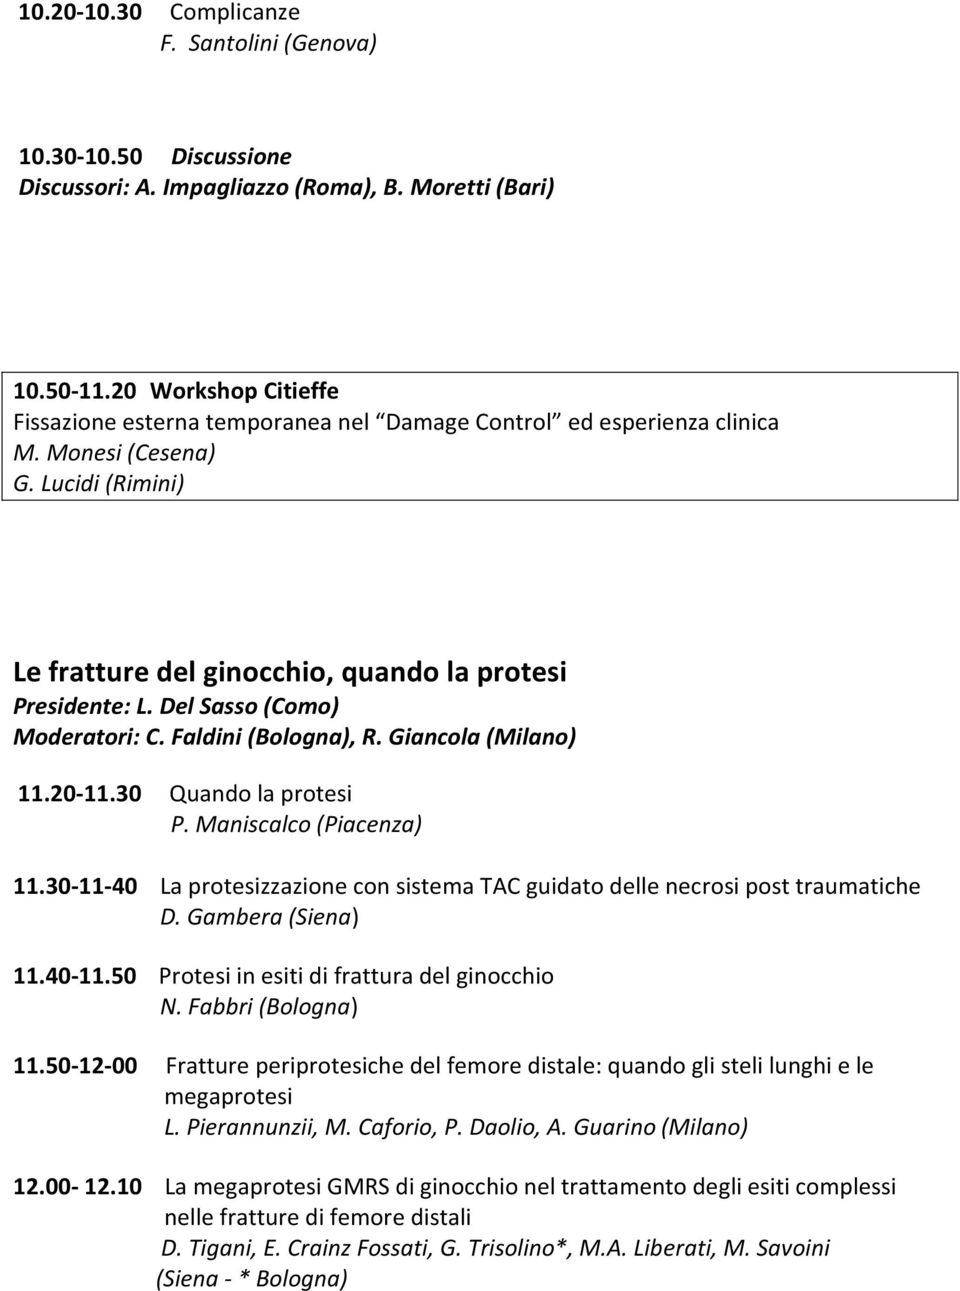 Del Sasso (Como) Moderatori: C. Faldini (Bologna), R. Giancola (Milano) 11.20-11.30 Quando la protesi P. Maniscalco (Piacenza) 11.